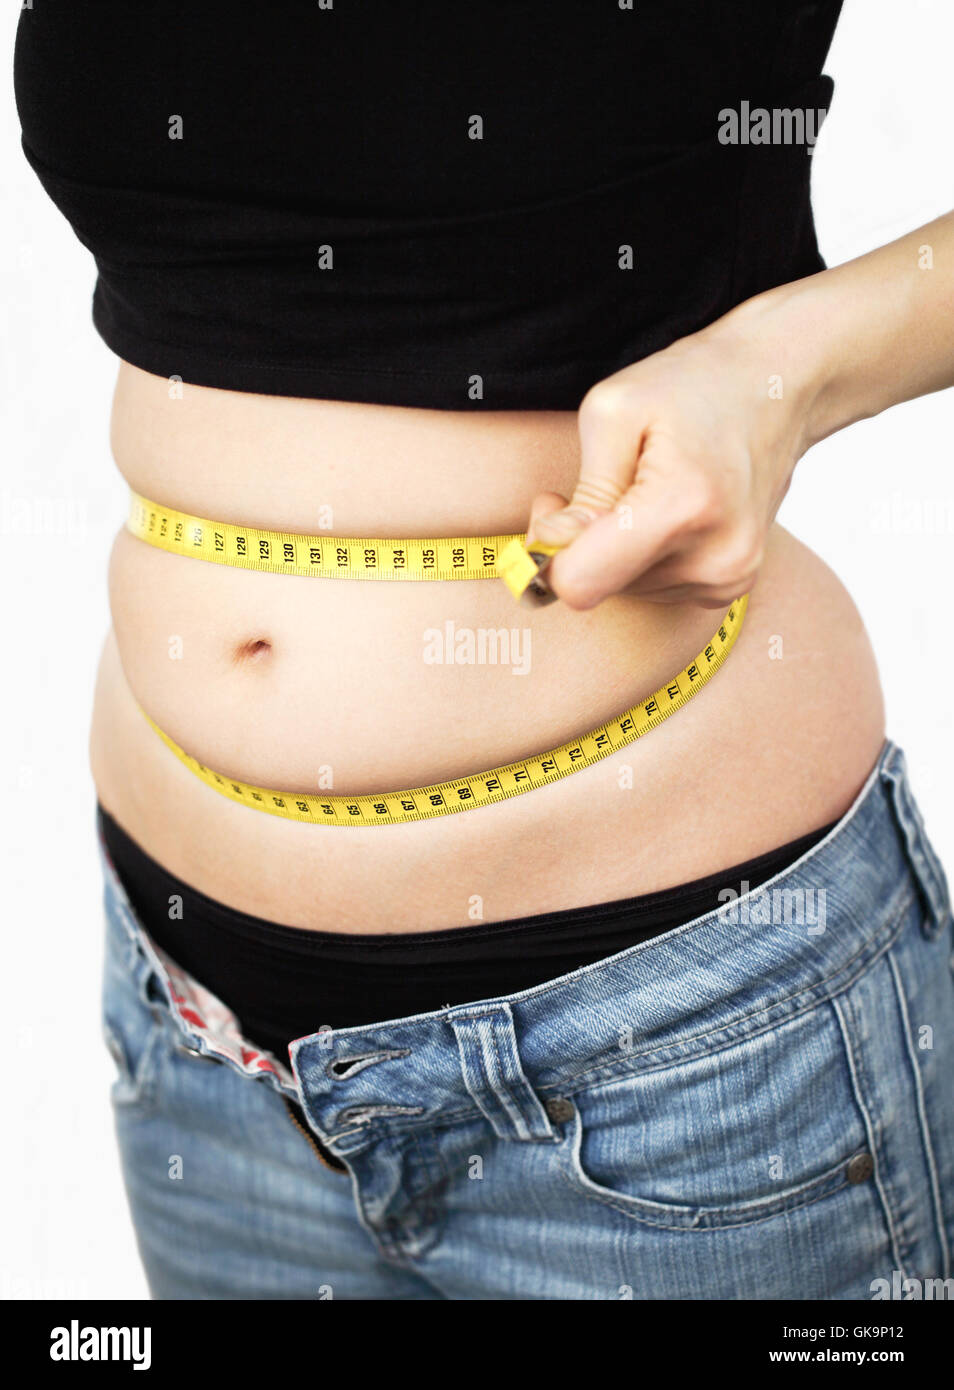 https://c8.alamy.com/compes/gk9p12/las-mujeres-con-sobrepeso-medidas-de-circunferencia-abdominal-gk9p12.jpg